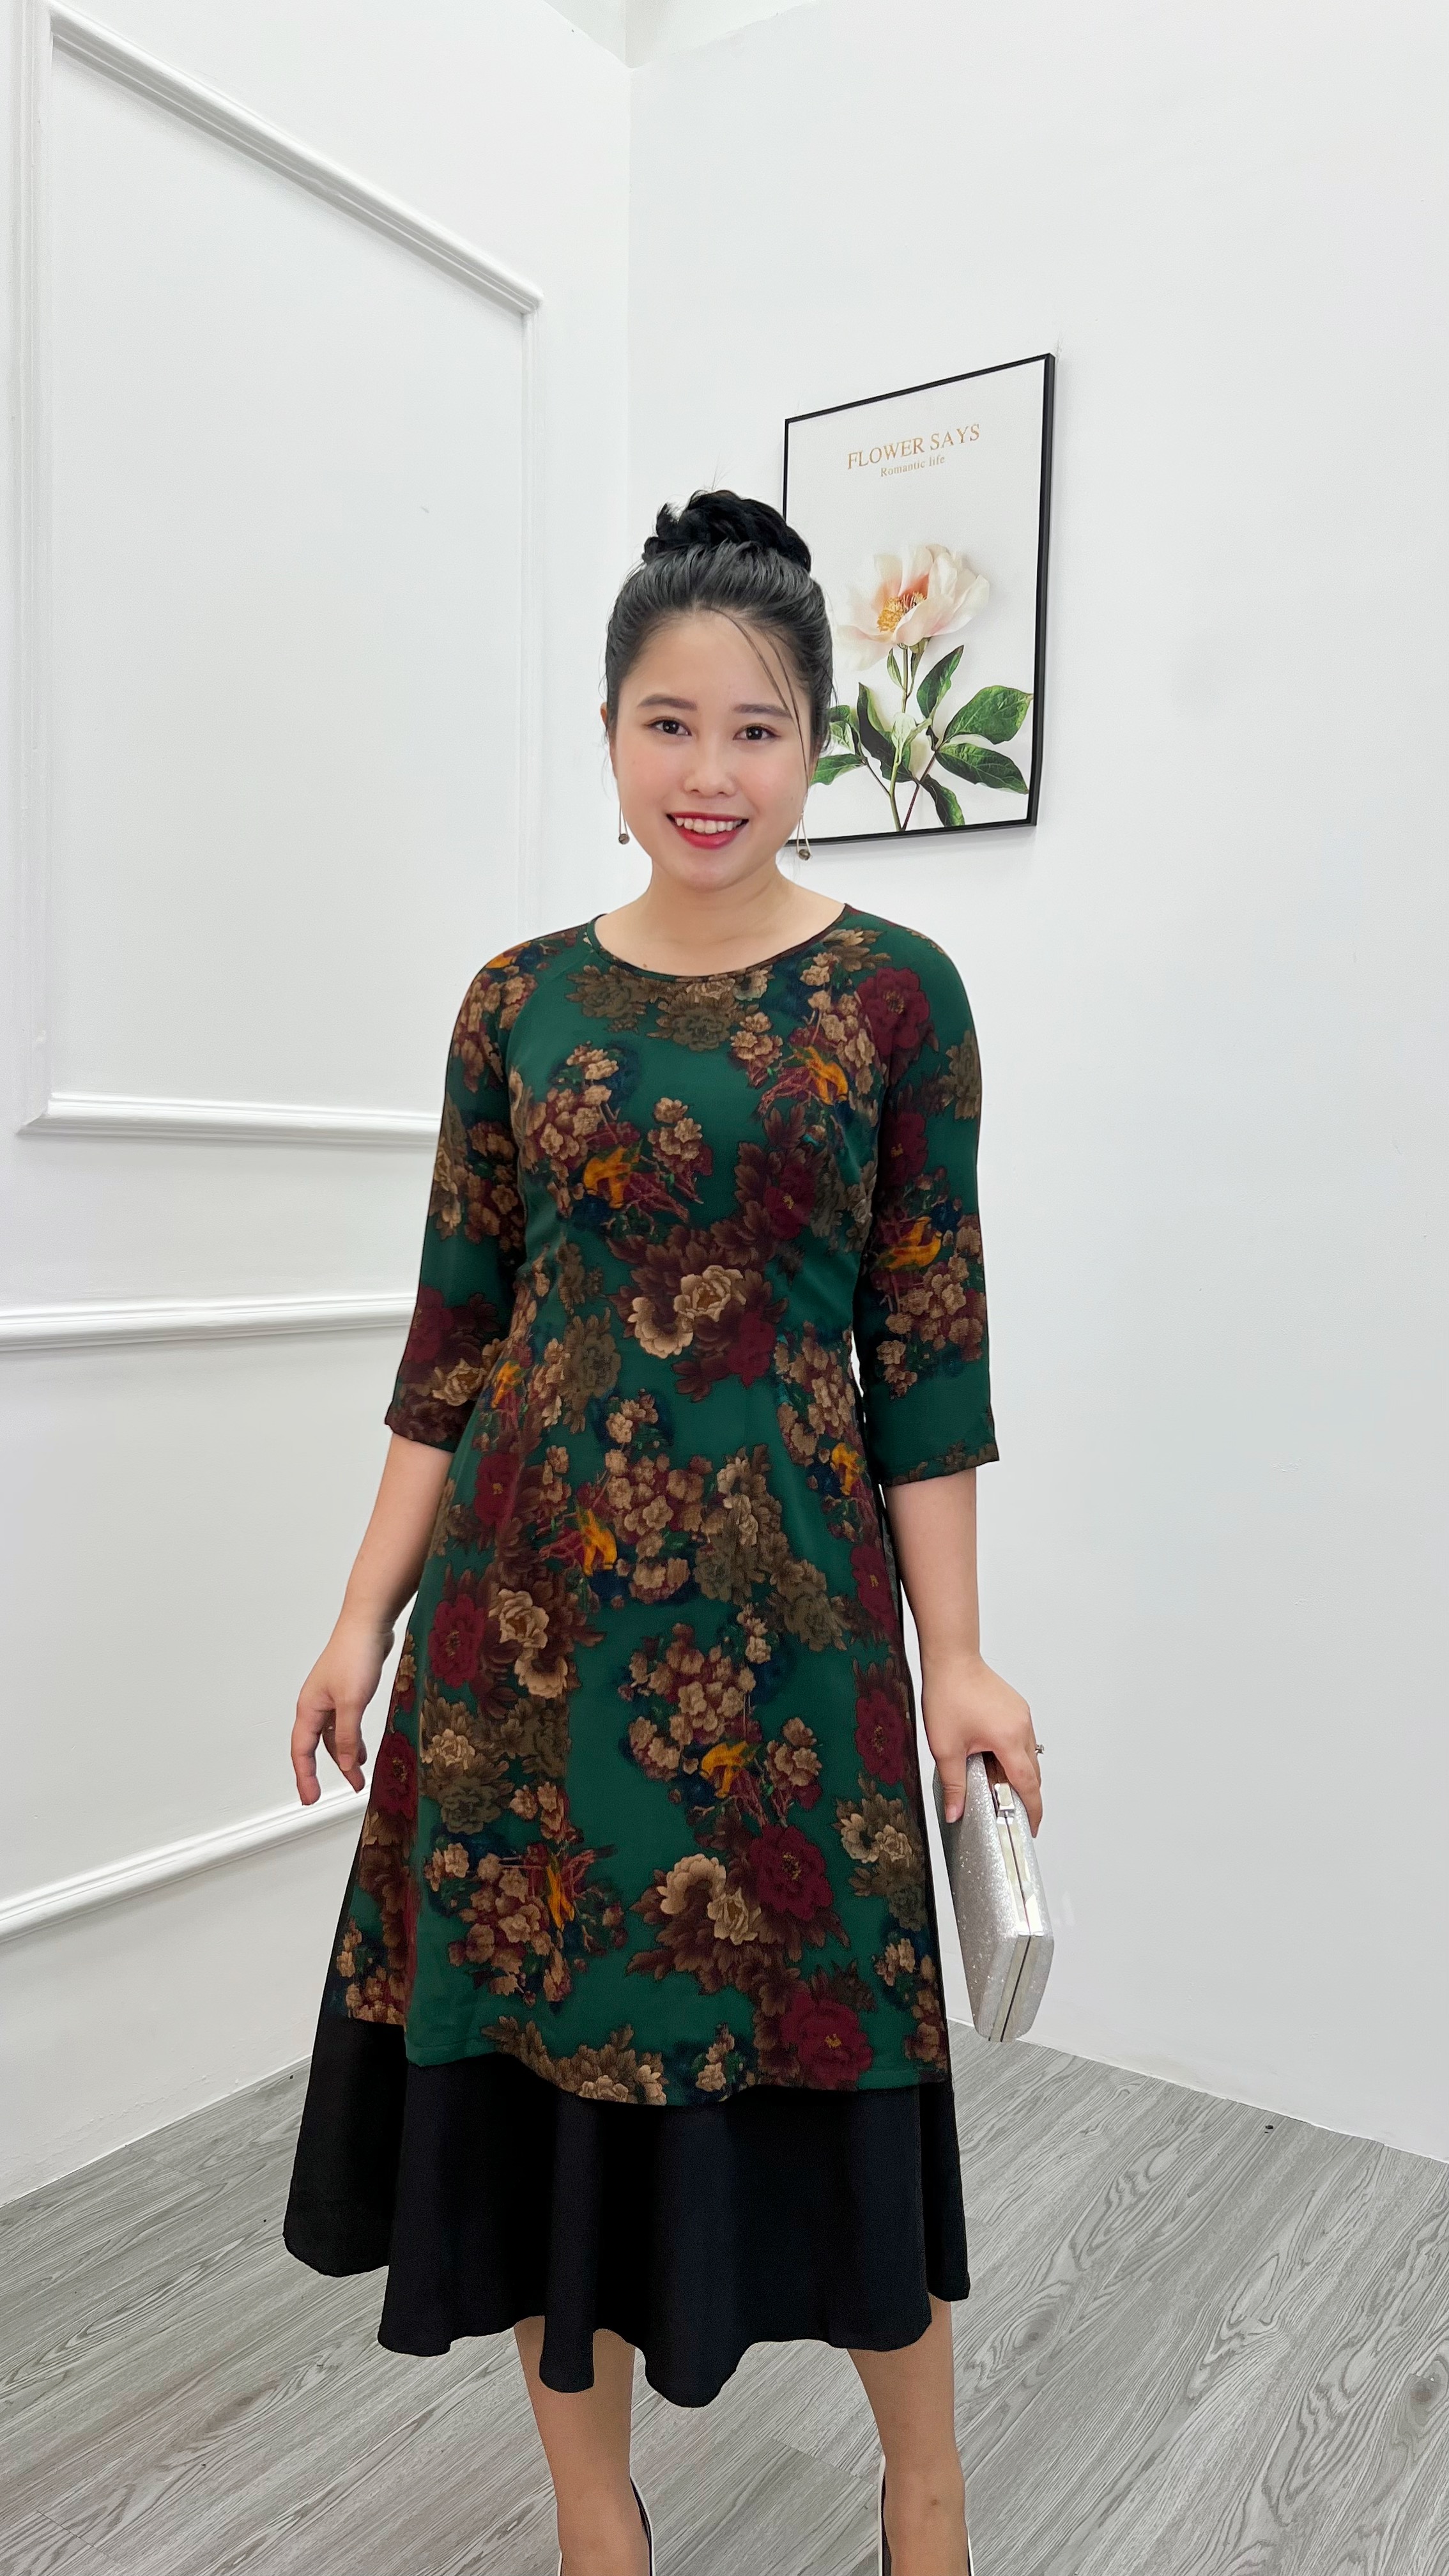 Áo dài cách tân Trang phục hiện đại của người phụ nữ Việt  Tiệm Vải Nga  Tường